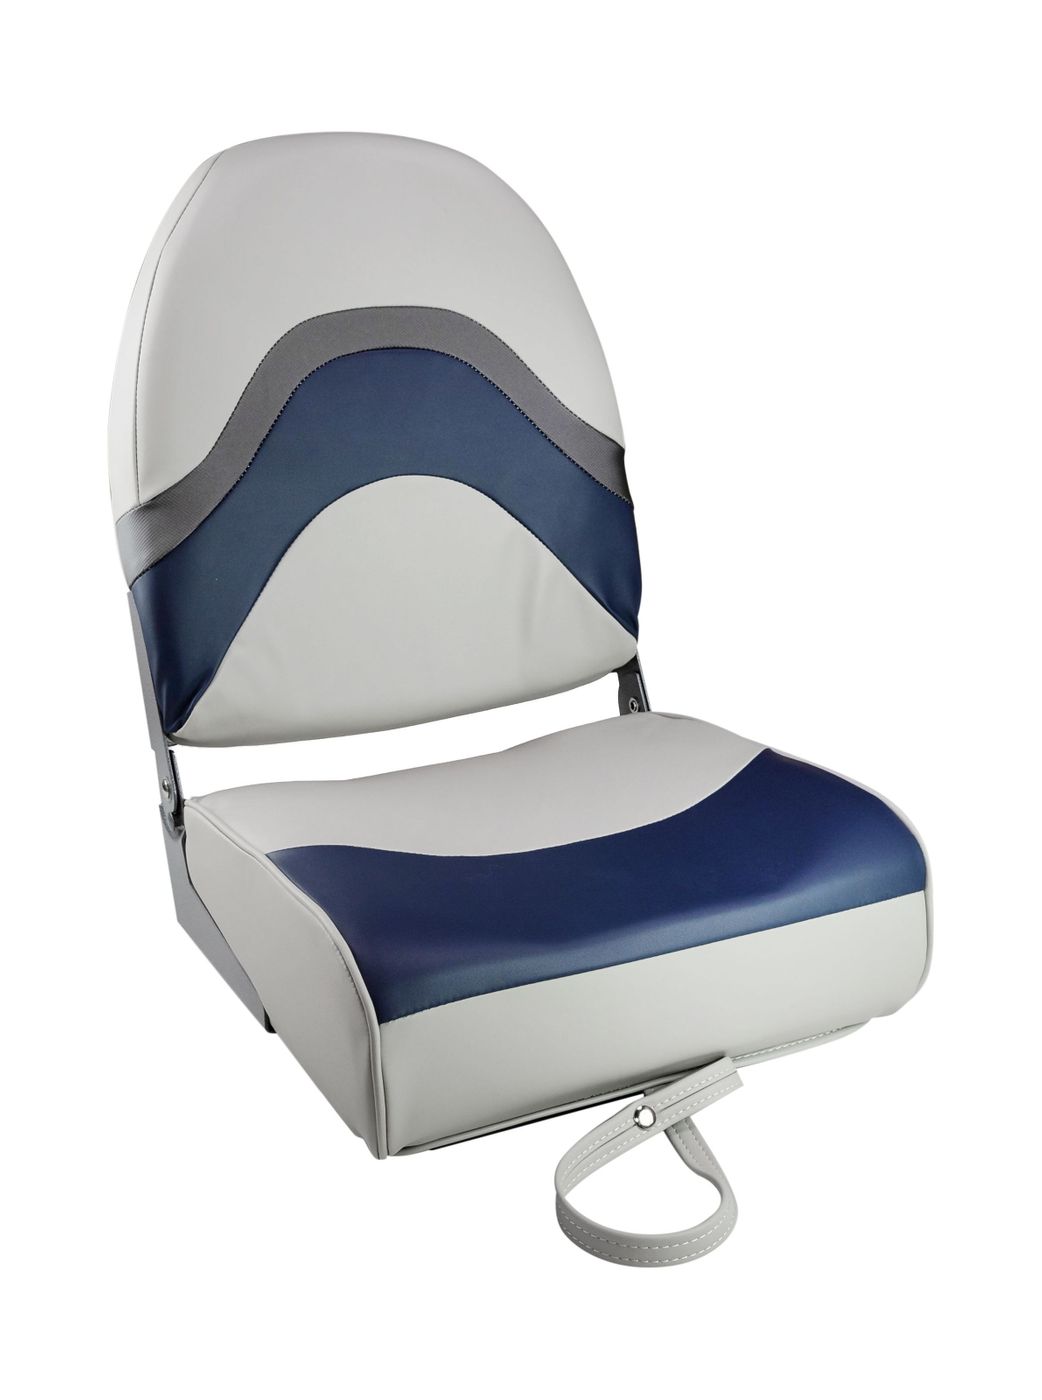 Кресло складное мягкое PREMIUM WAVE, цвет серый/синий 1062031 кресло шезлонг складное со съемным матрасом и декоративной подушкой подножка haushalt hhk7 bl синий